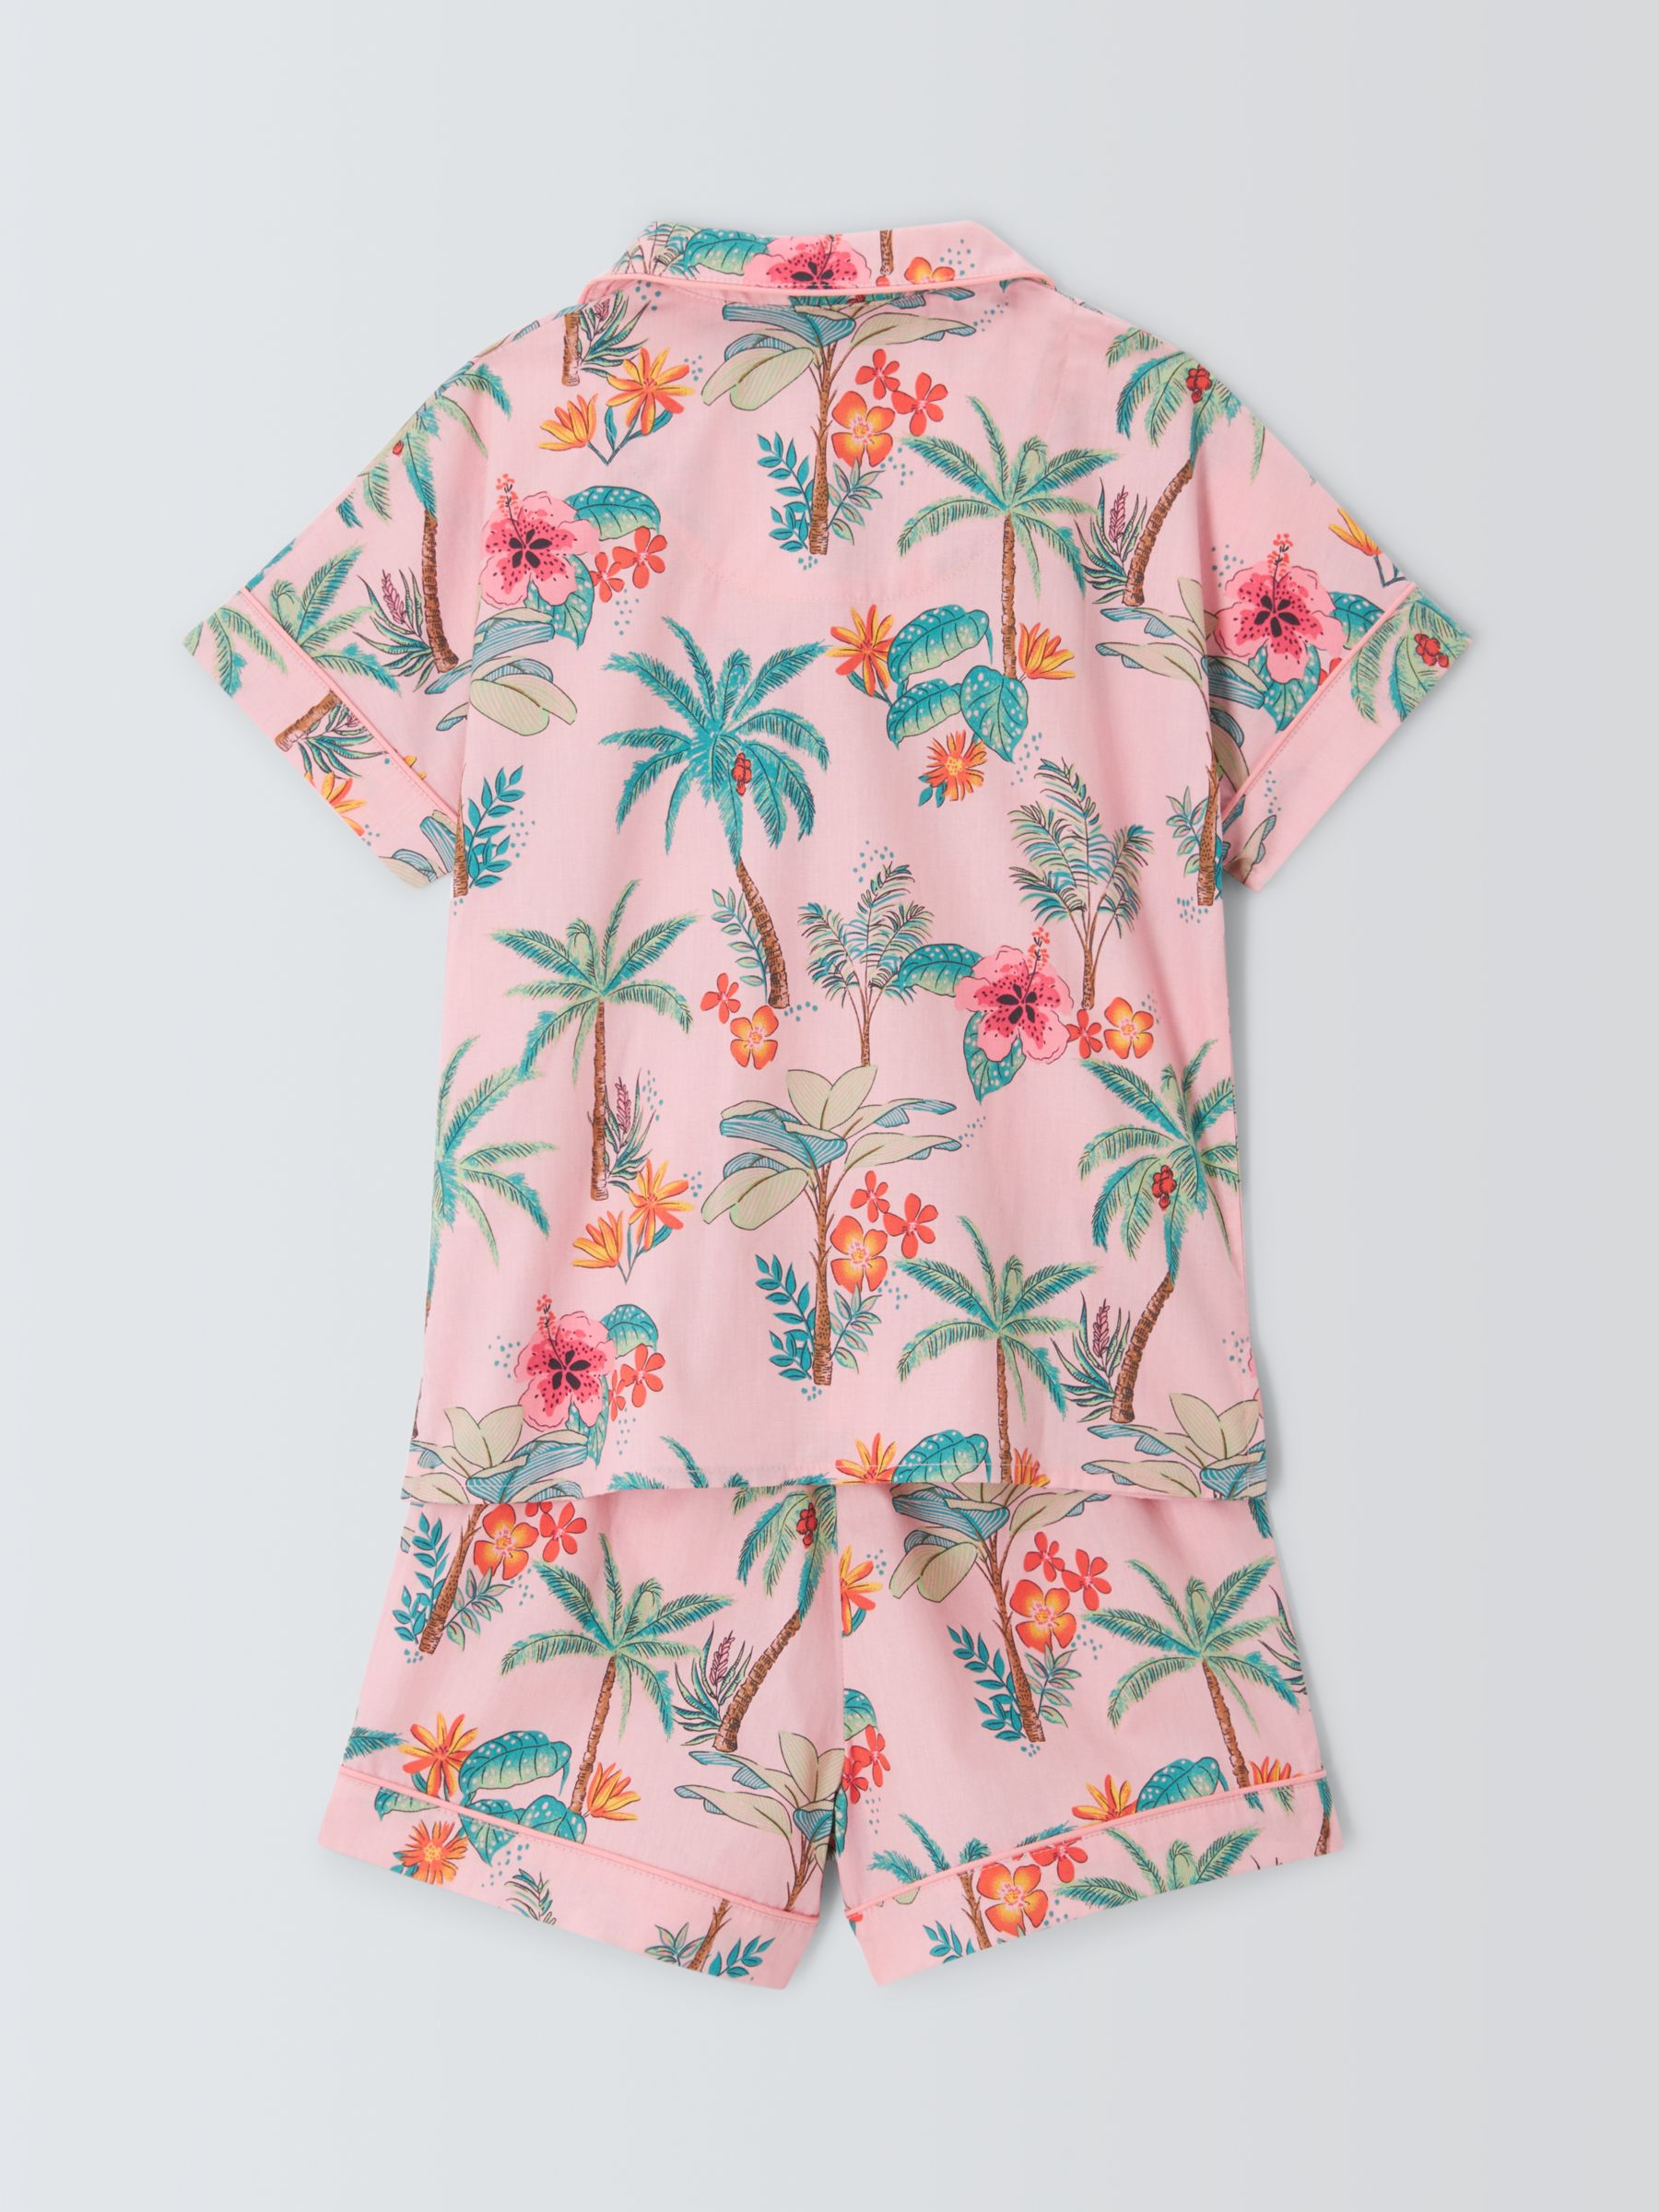 John Lewis Kids' Hibiscus Palm Shirt Short Pyjama Set, Pink, 3 years